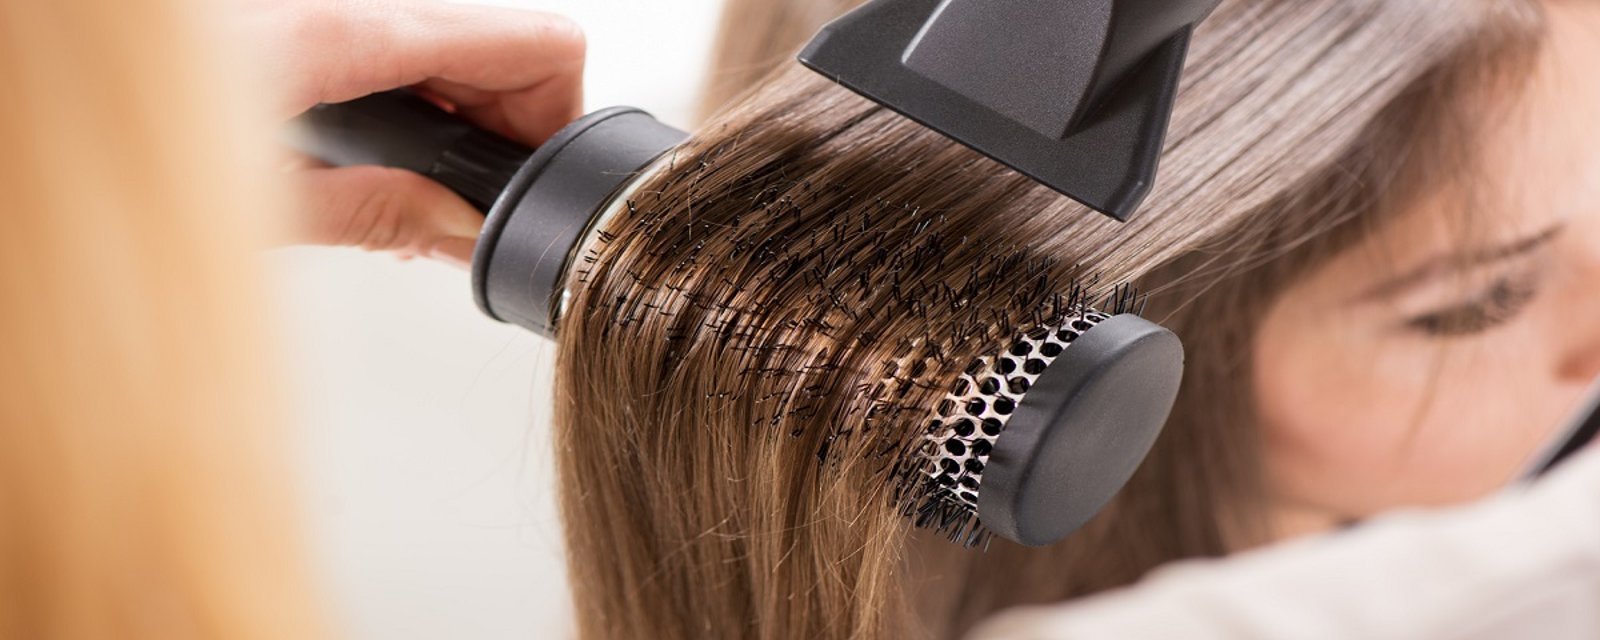 7 conseils pour sécher plus rapidement vos cheveux tout en les protégeant